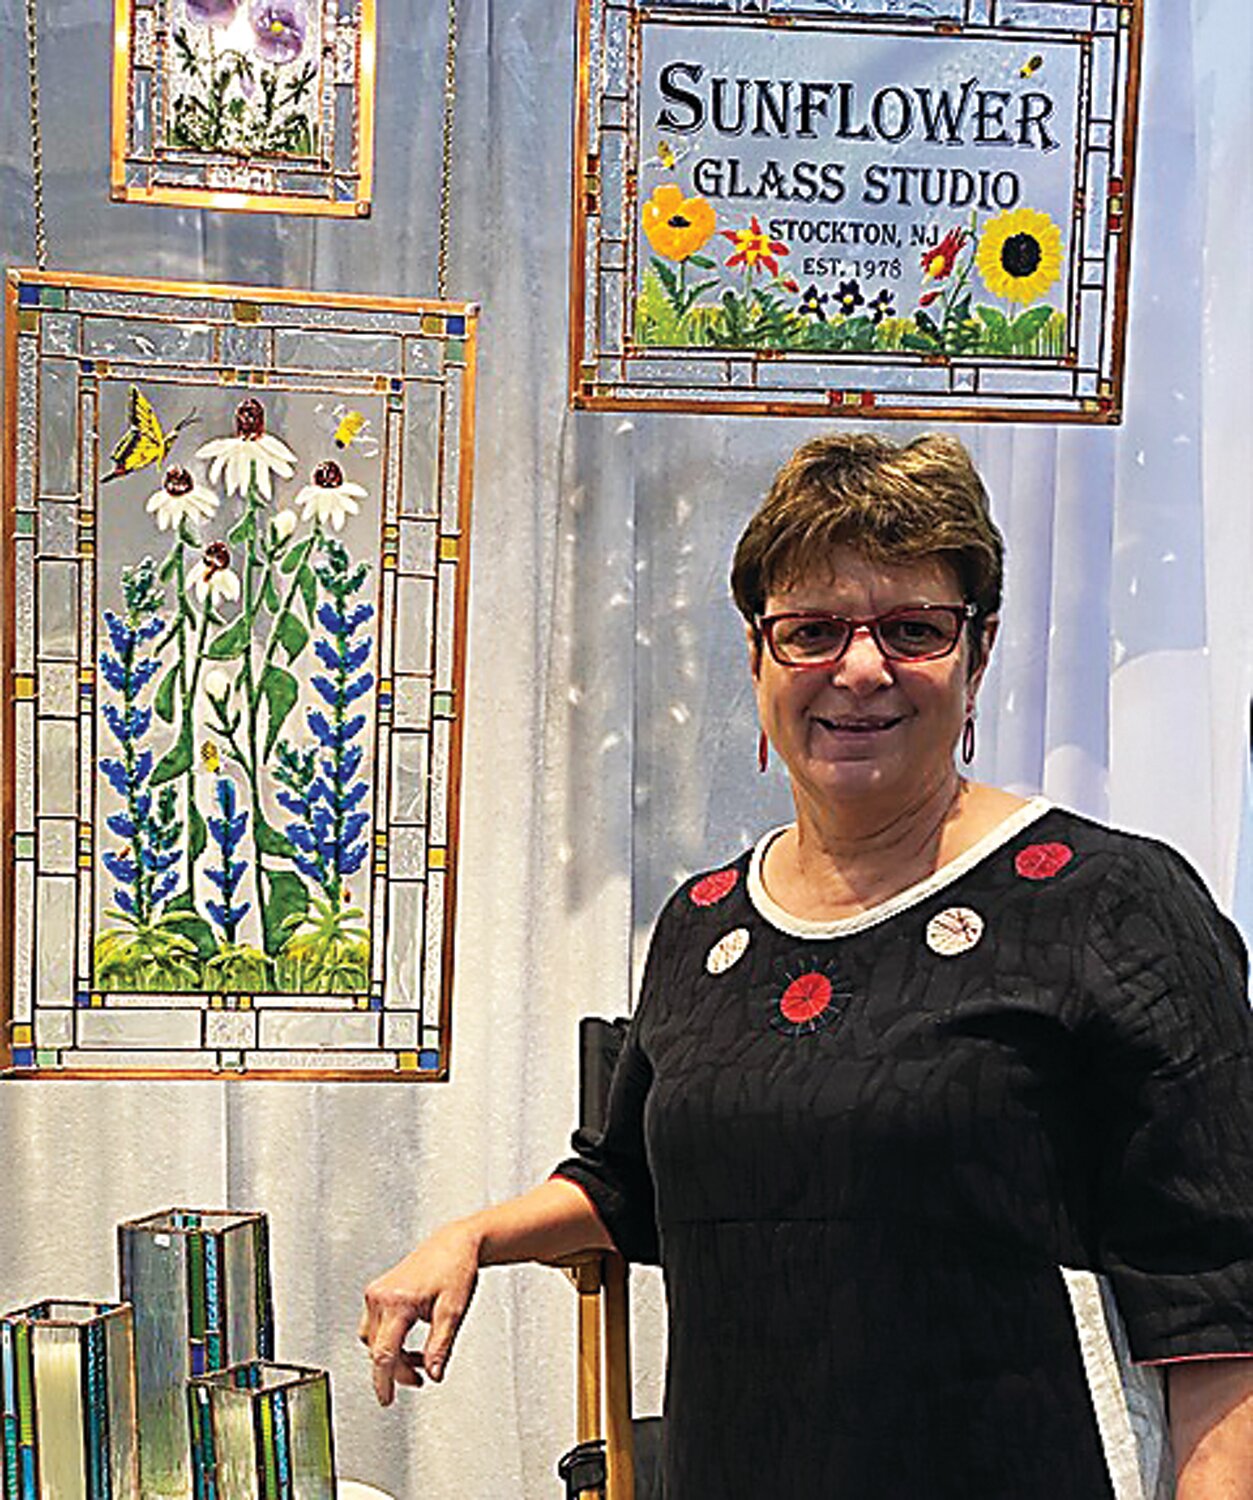 Karen Caldwell is the lead designer for Sunflower Glass Studio in Stockton N.J.